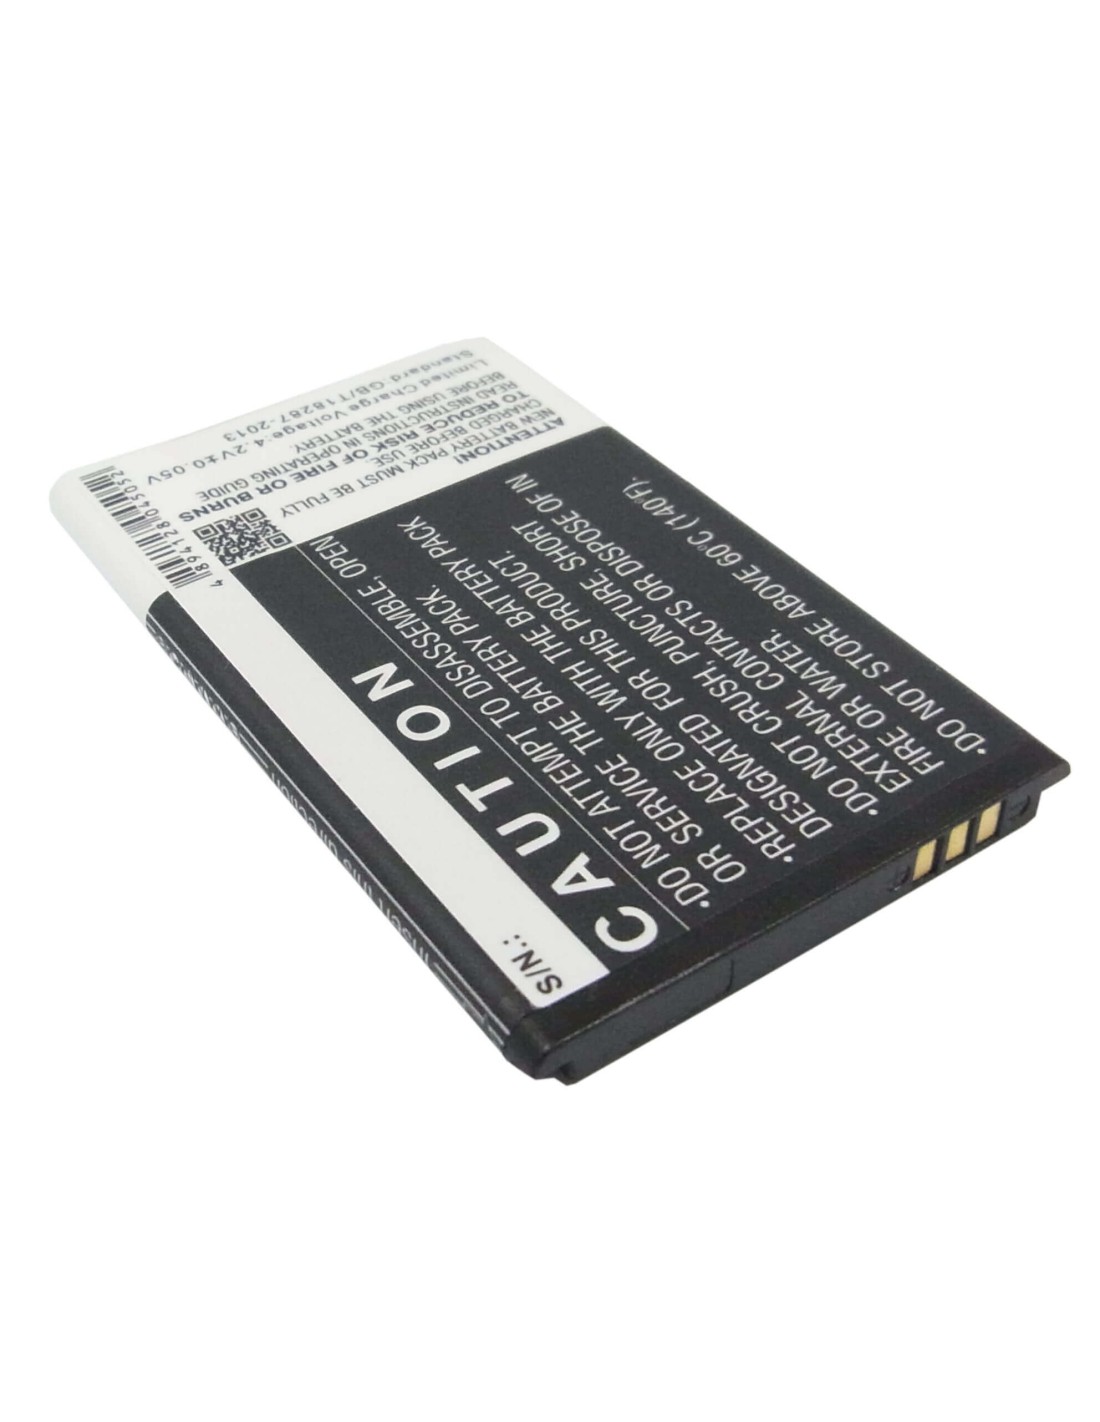 Battery for OPPO U529, U525, A209 3.7V, 1100mAh - 4.07Wh